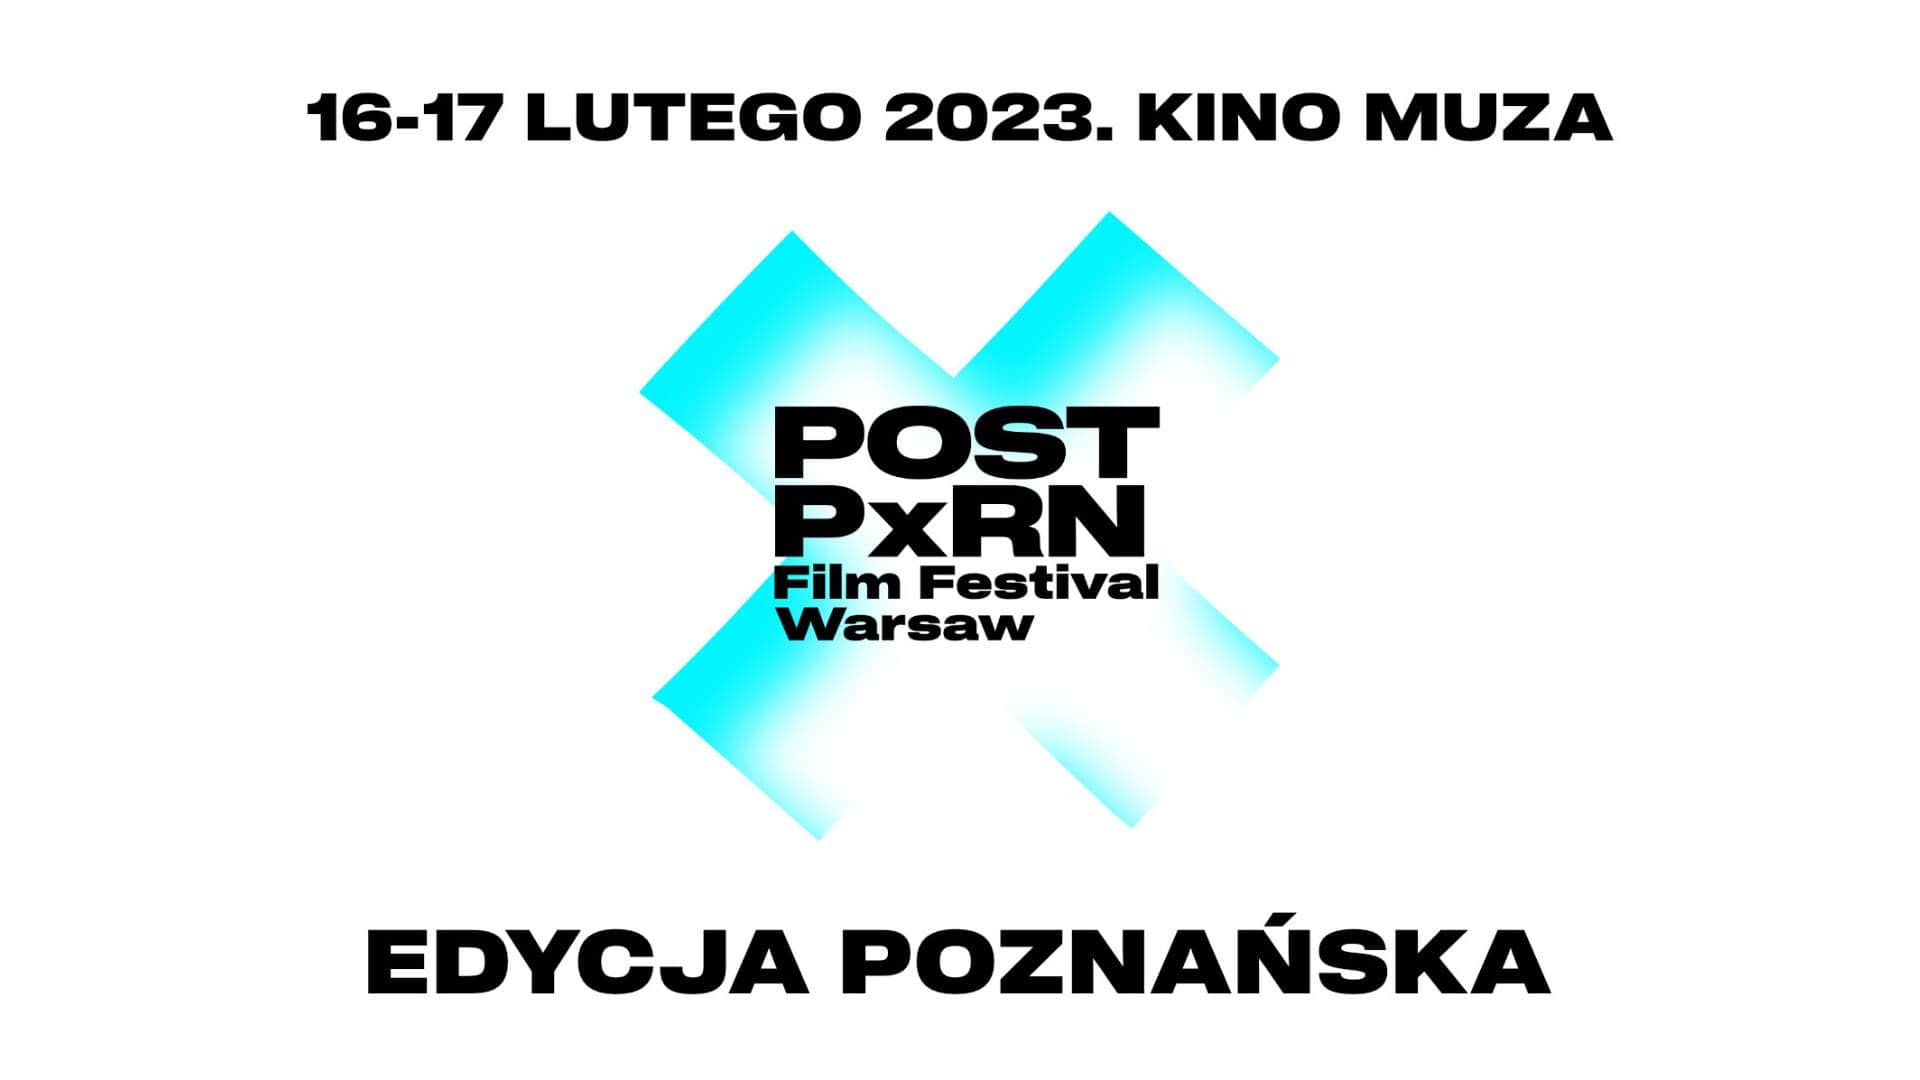 Post Pxrn Film Festival Warsaw. Edycja poznańska w Kinie Muza | 16-17.02.2023